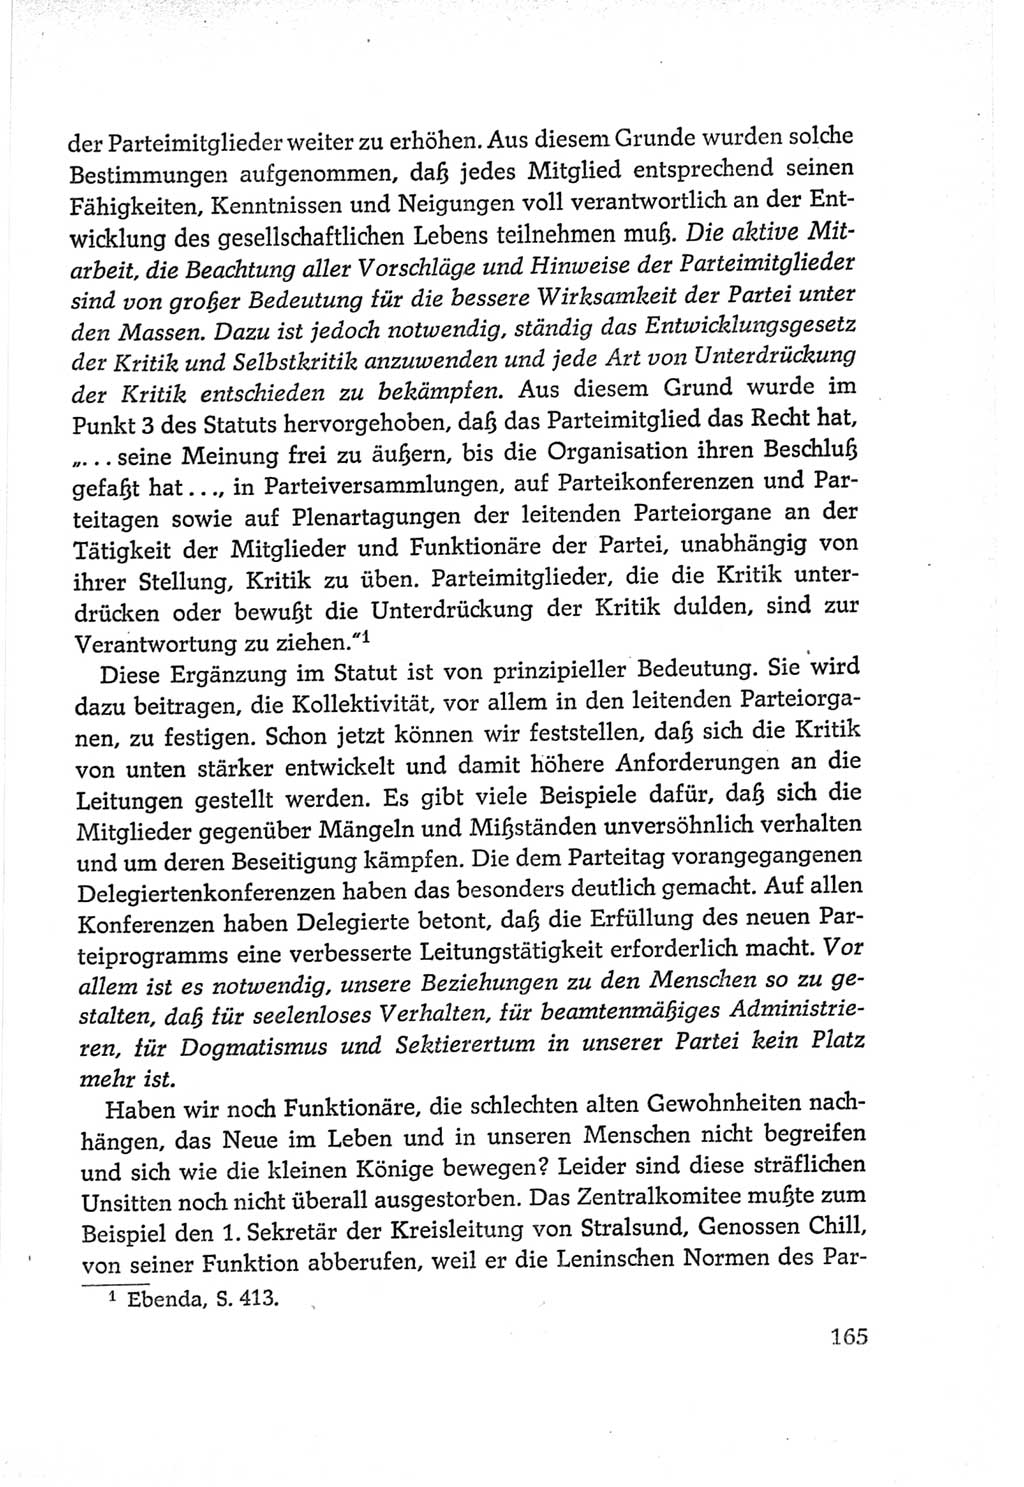 Protokoll der Verhandlungen des Ⅵ. Parteitages der Sozialistischen Einheitspartei Deutschlands (SED) [Deutsche Demokratische Republik (DDR)] 1963, Band Ⅱ, Seite 165 (Prot. Verh. Ⅵ. PT SED DDR 1963, Bd. Ⅱ, S. 165)